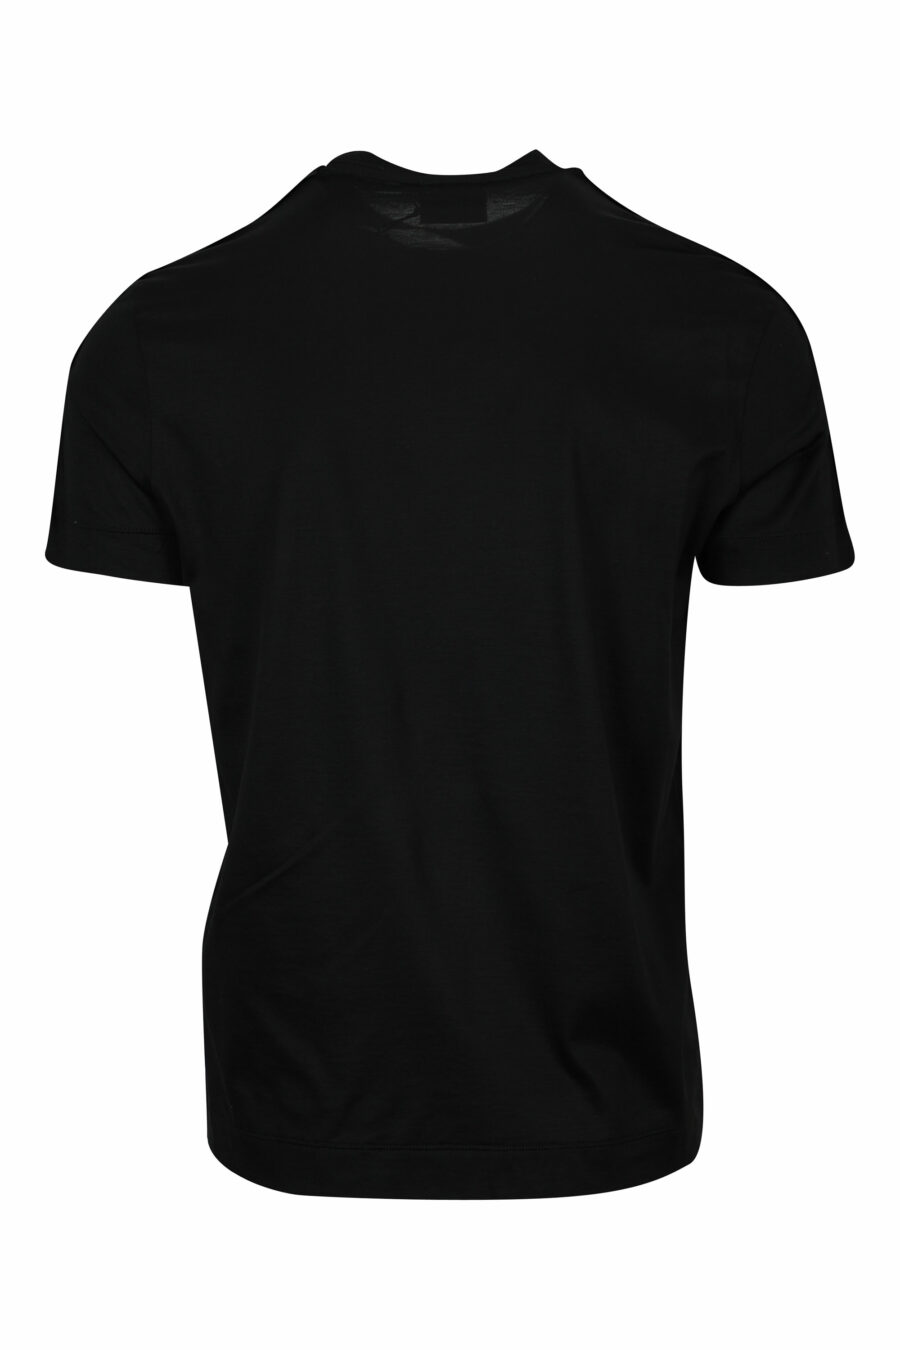 Camiseta negra con logo en hombros monocromático - 8057970958369 1